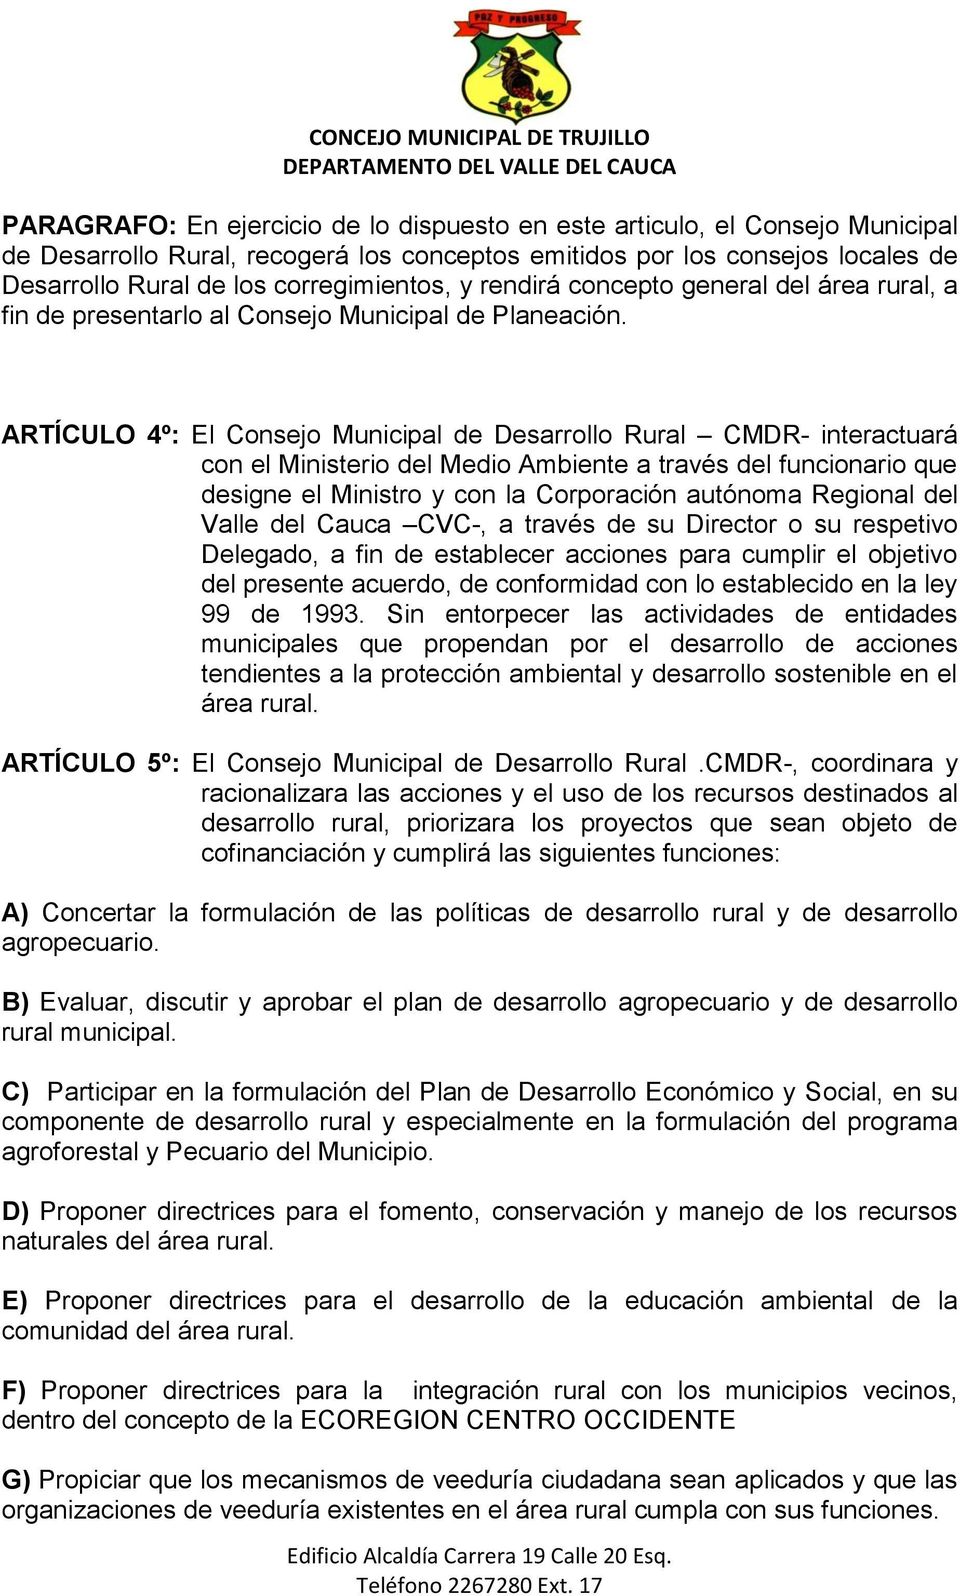 ARTÍCULO 4º: El Consejo Municipal de Desarrollo Rural CMDR- interactuará con el Ministerio del Medio Ambiente a través del funcionario que designe el Ministro y con la Corporación autónoma Regional